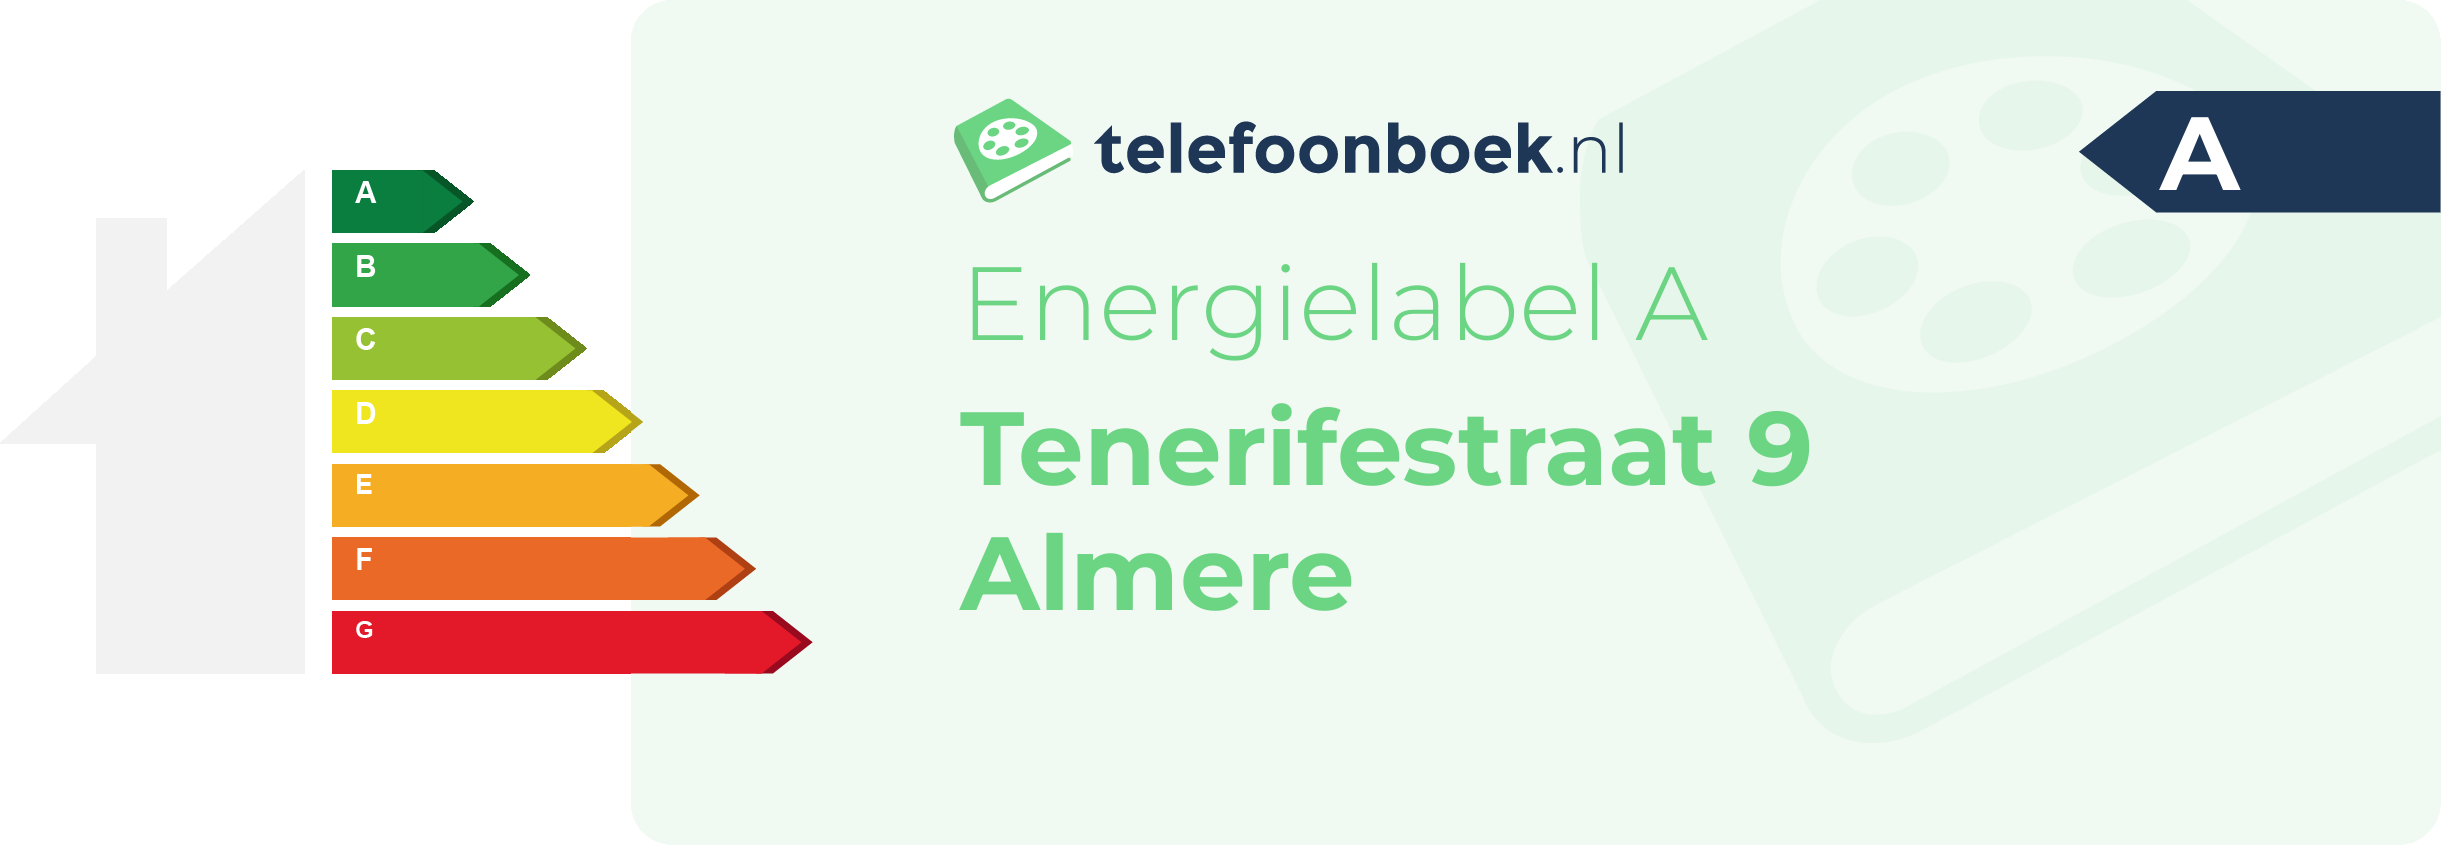 Energielabel Tenerifestraat 9 Almere